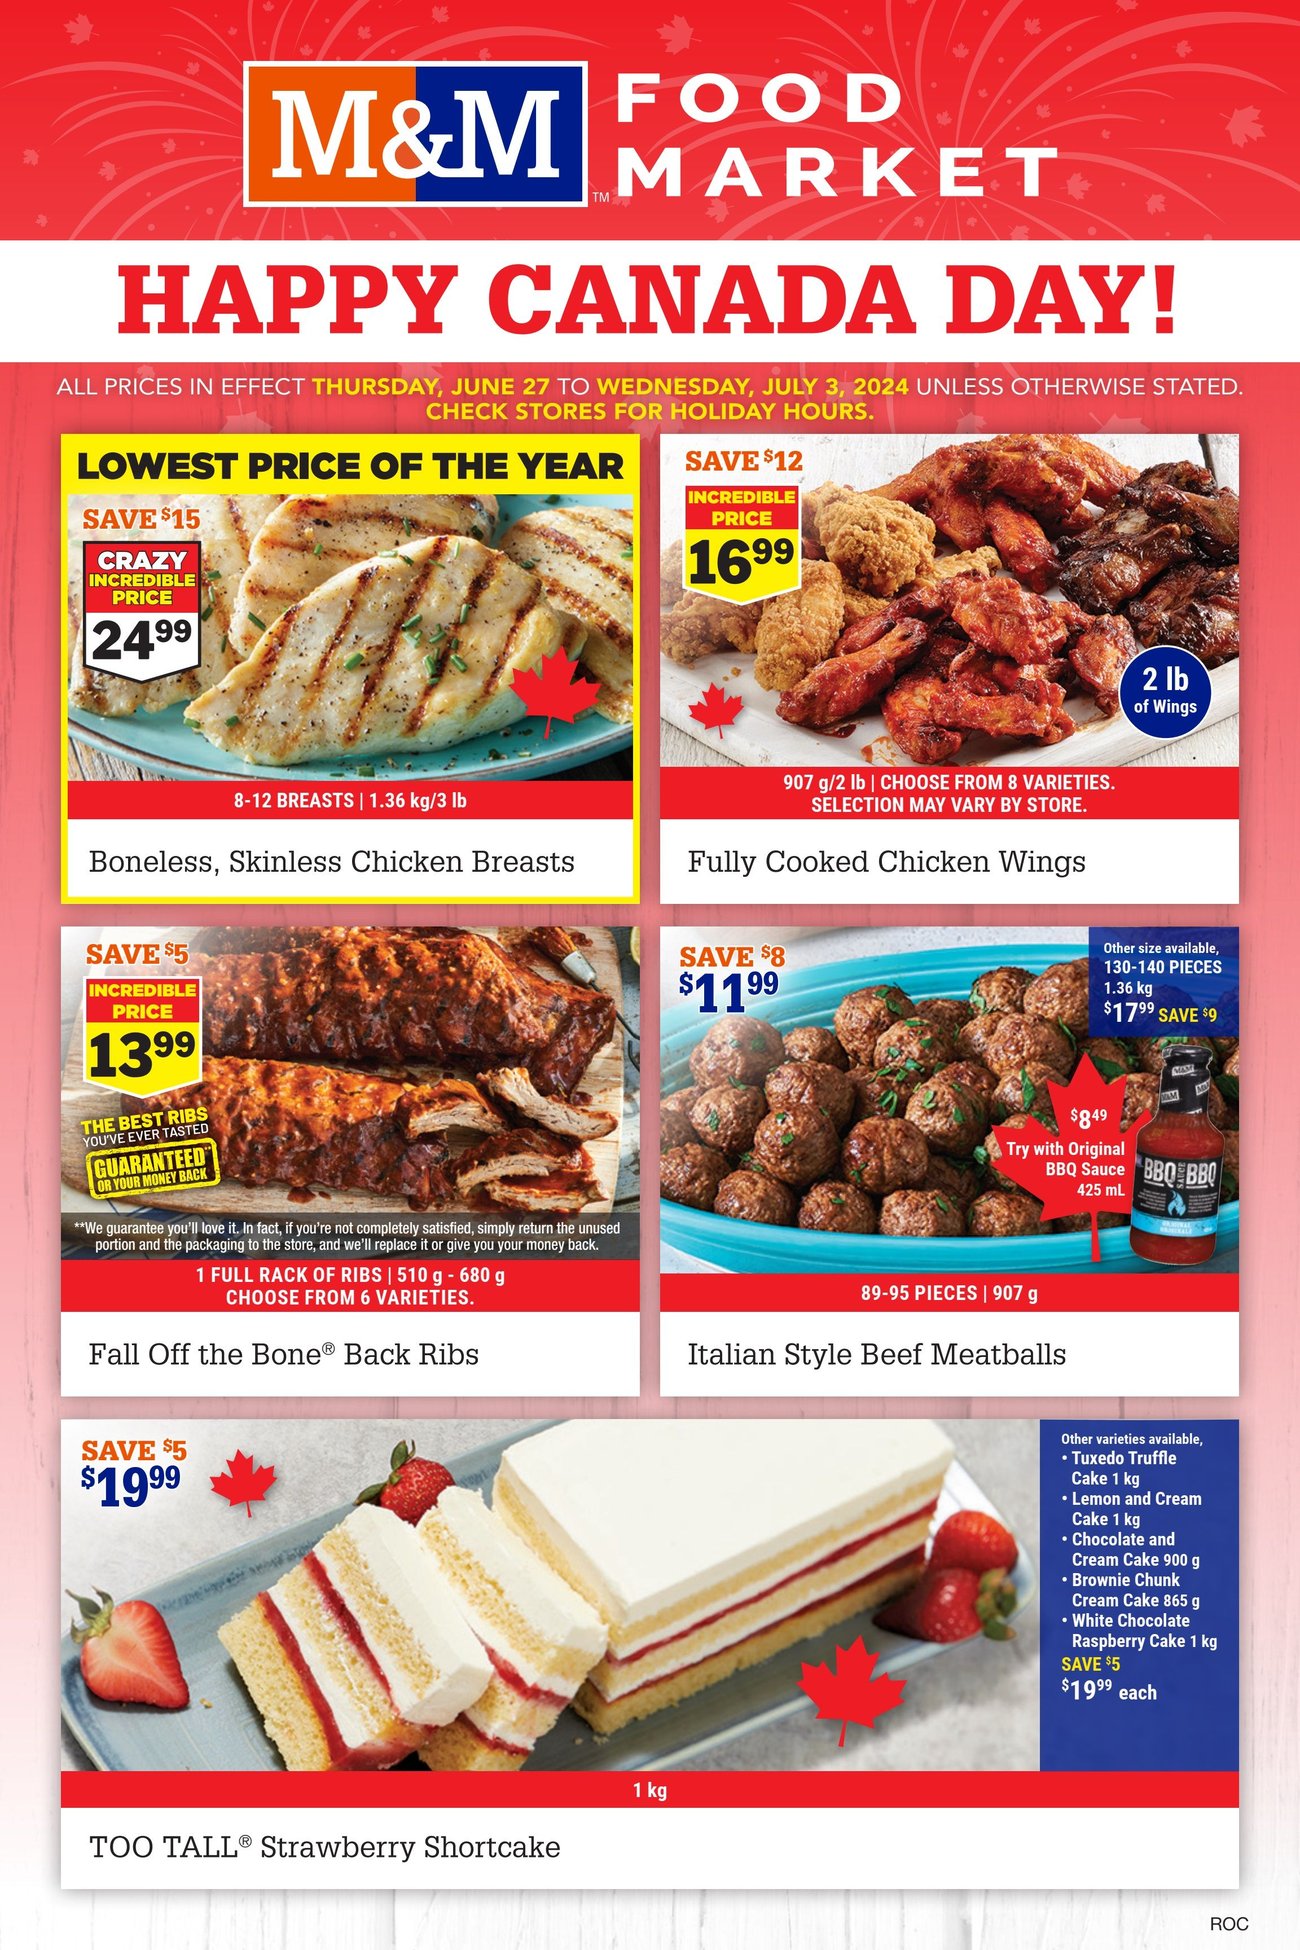 M&M Food Market - Atlantic & Western Canada - Weekly Flyer Specials - Page 1